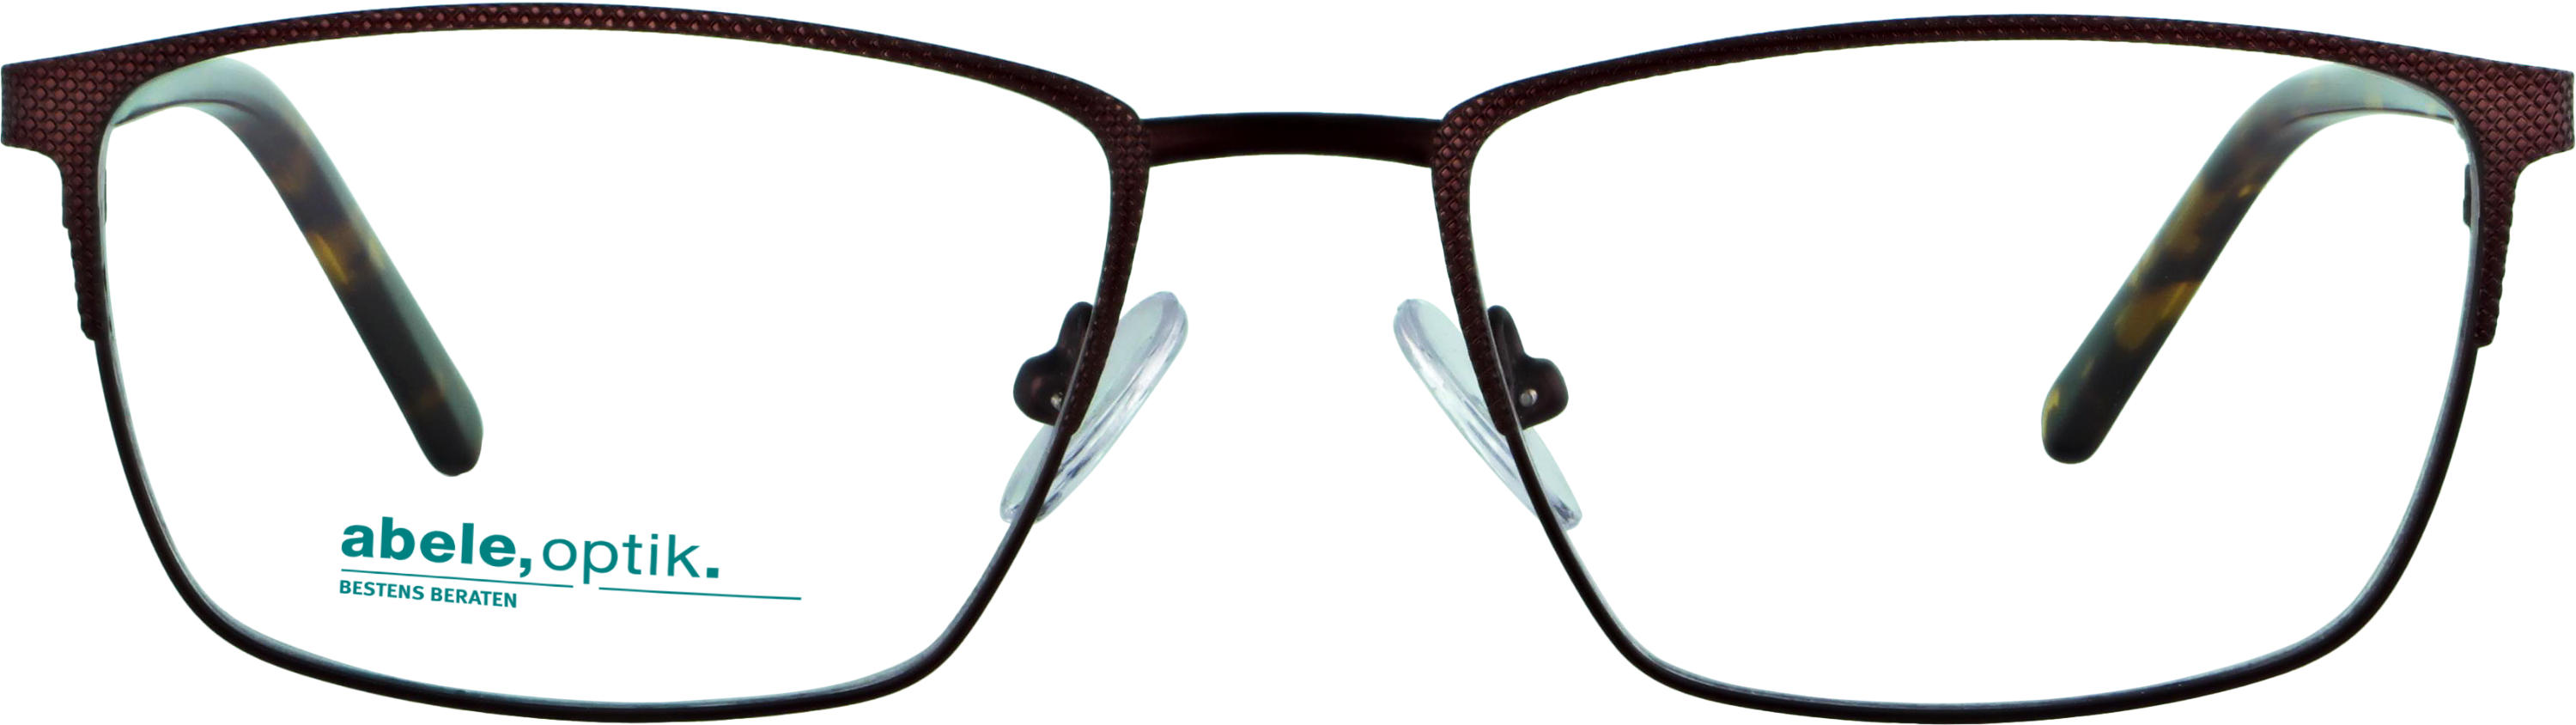 Das Bild zeigt die Korrektionsbrille 142151 von der Marke Abele Optik in braun matt / Bügel: havanna.